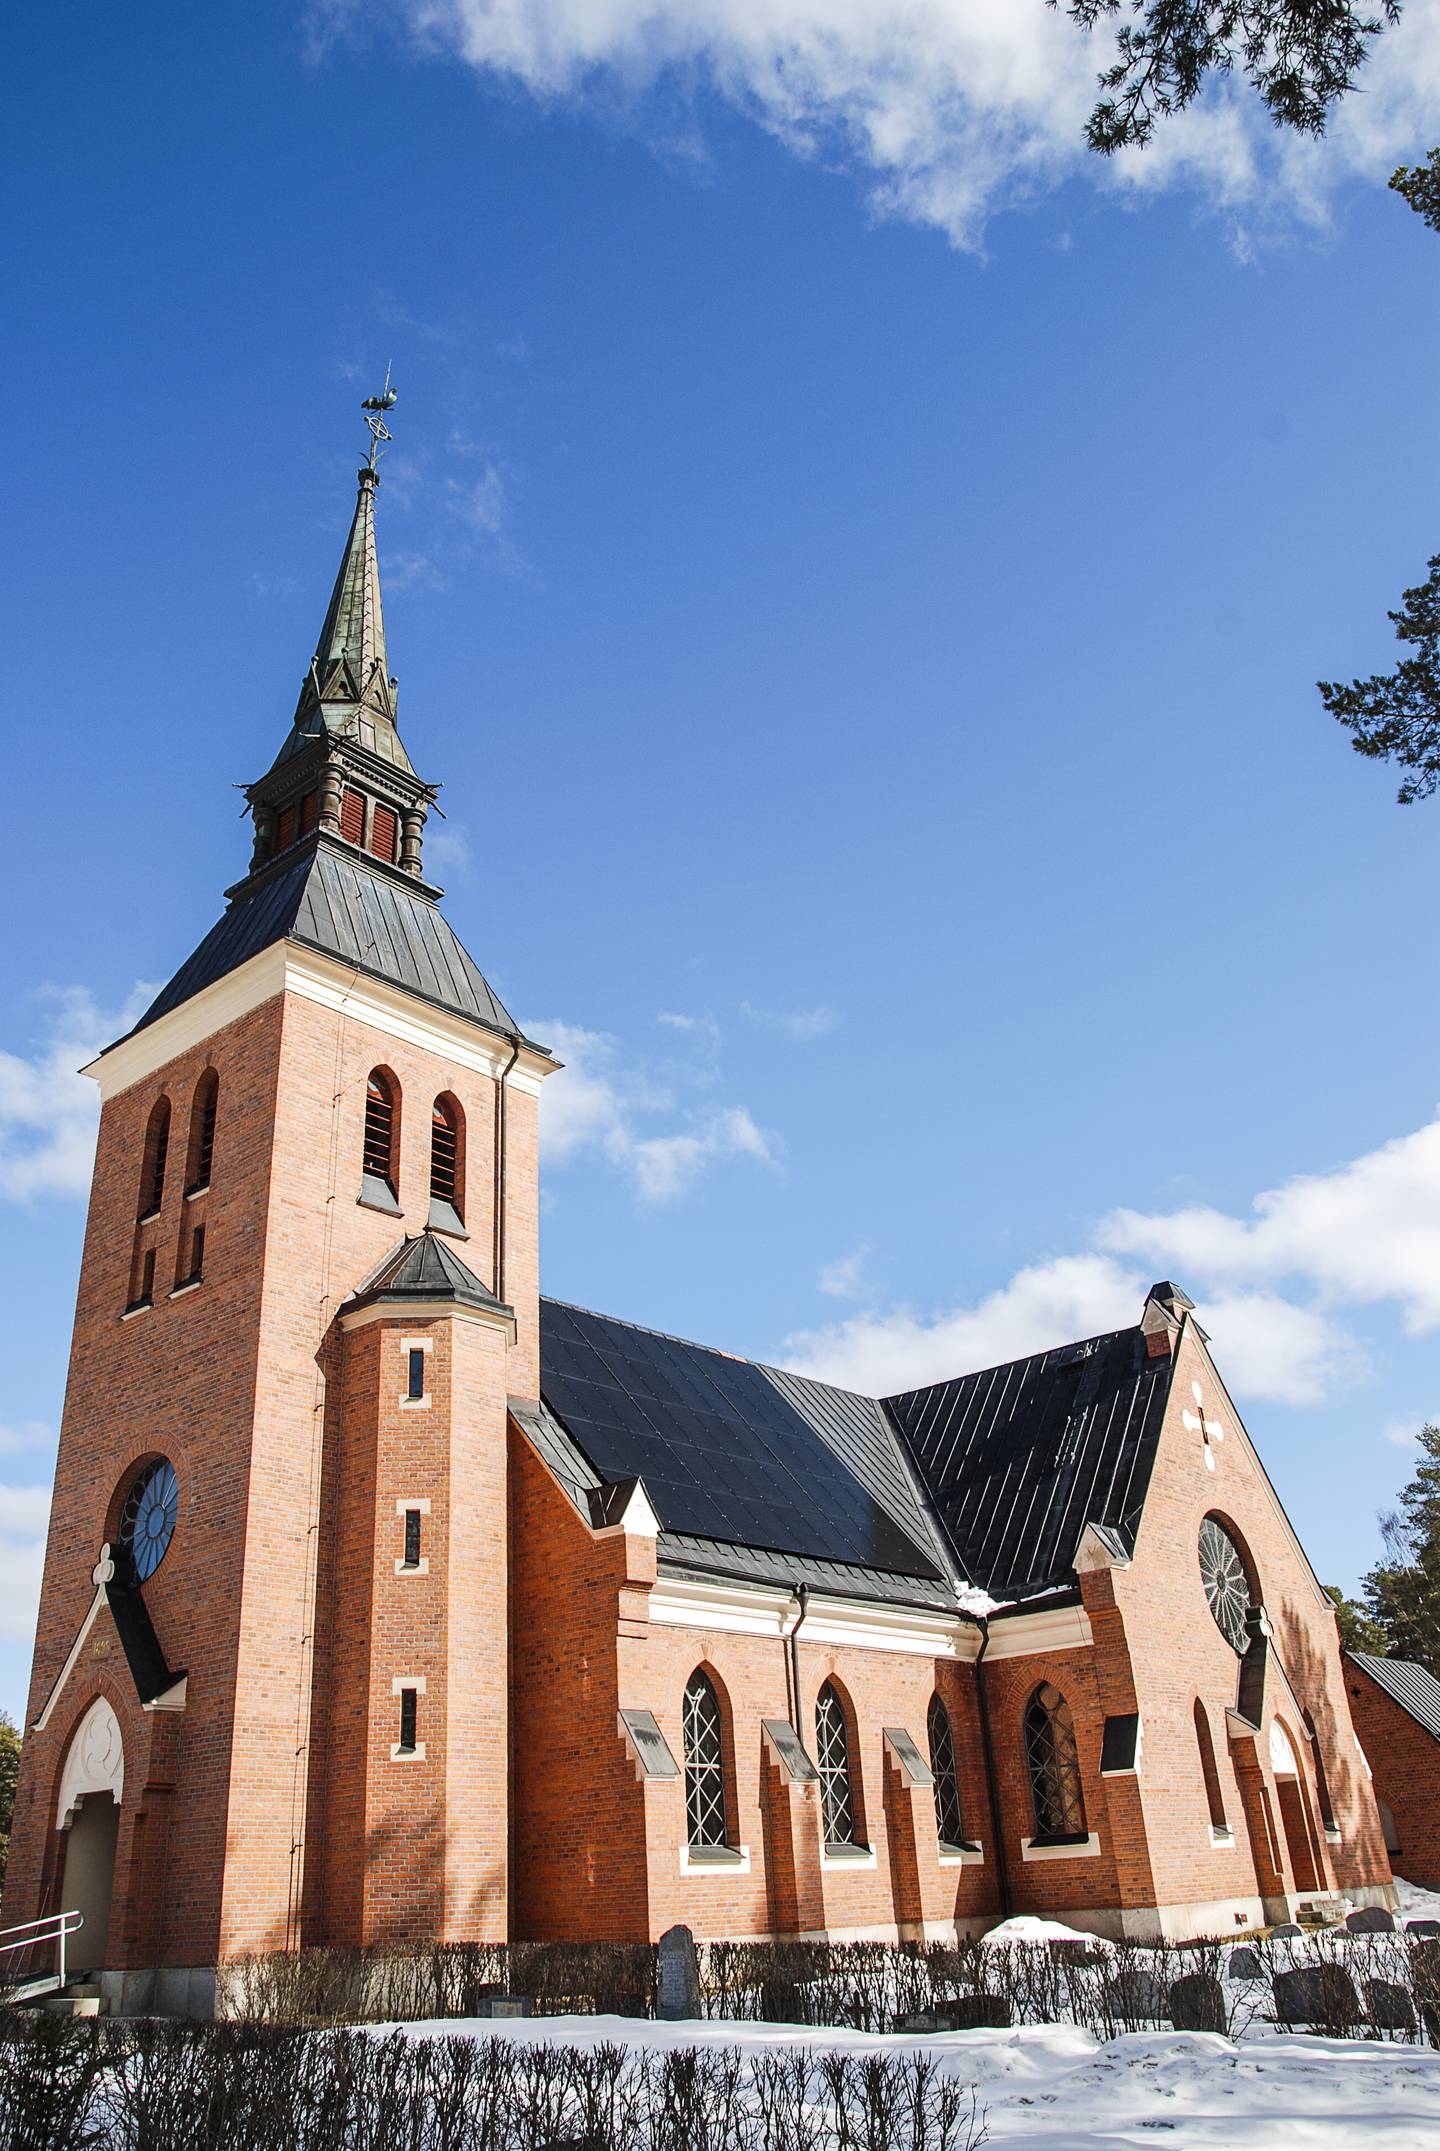 Stuguns kyrka installerar solpaneler. Som första äldre kyrka i landet fick Stuguns kyrka i östra Jämtland i år solpanel på taket. Tidigare förfrågningar har fått nej från Riksantikvarieämbetet.